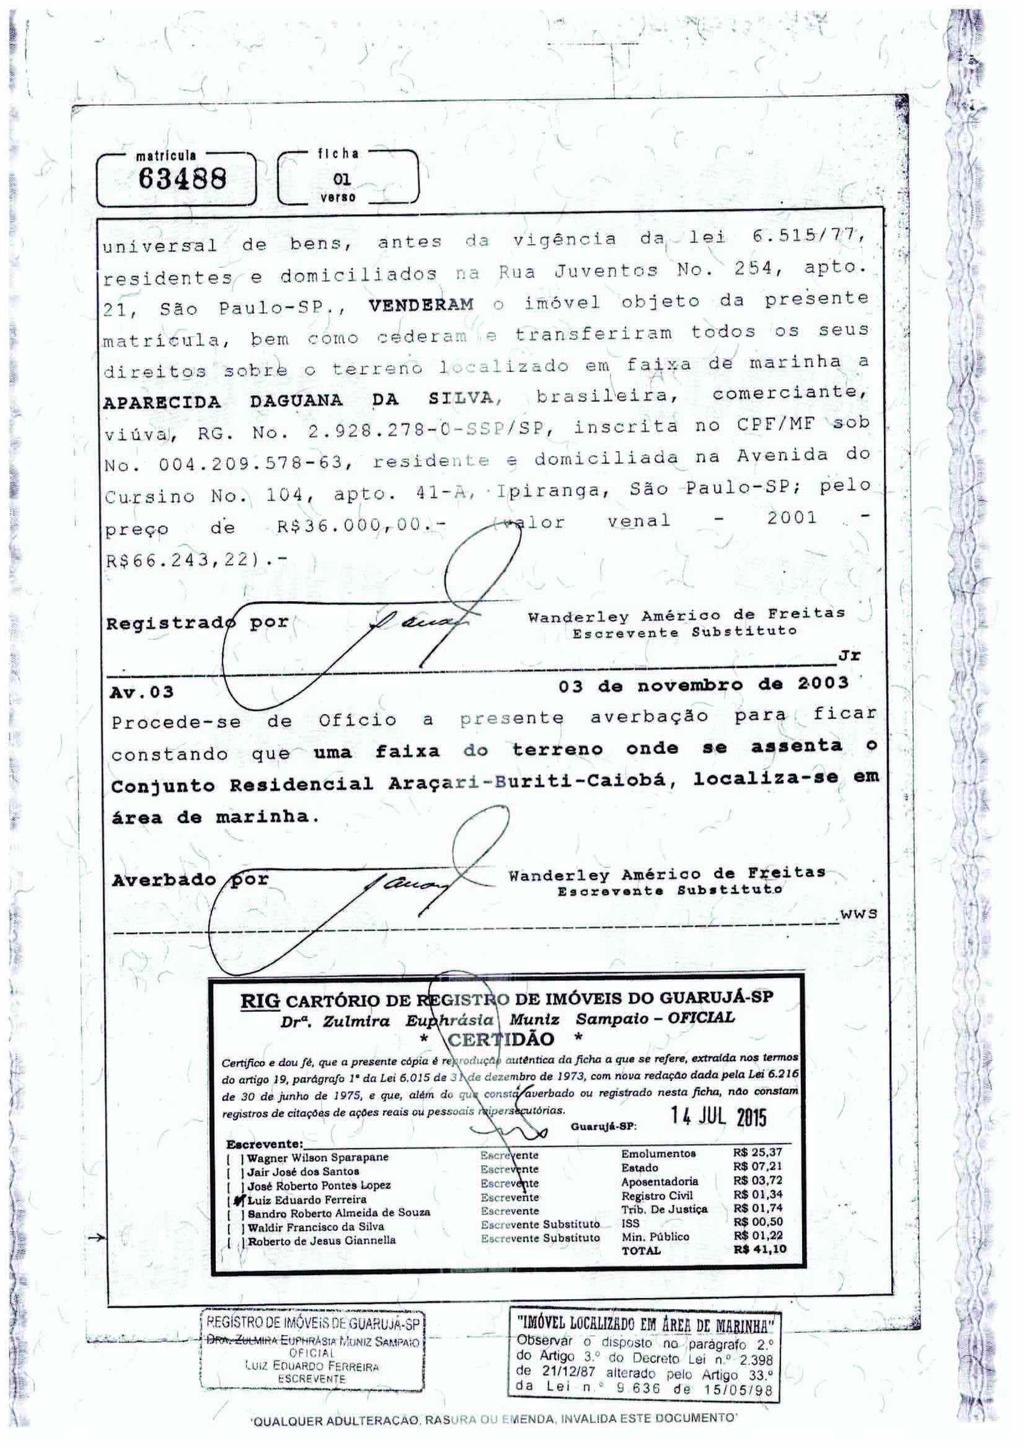 fls. 60 Este documento é cópia do original, assinado digitalmente por LUIS PAULO PERCHIAVALLI DA ROCHA FROTA BRAGA e Tribunal de Justica do Estado de Sao Paulo, protocolado em 27/03/2017 às 11:22,